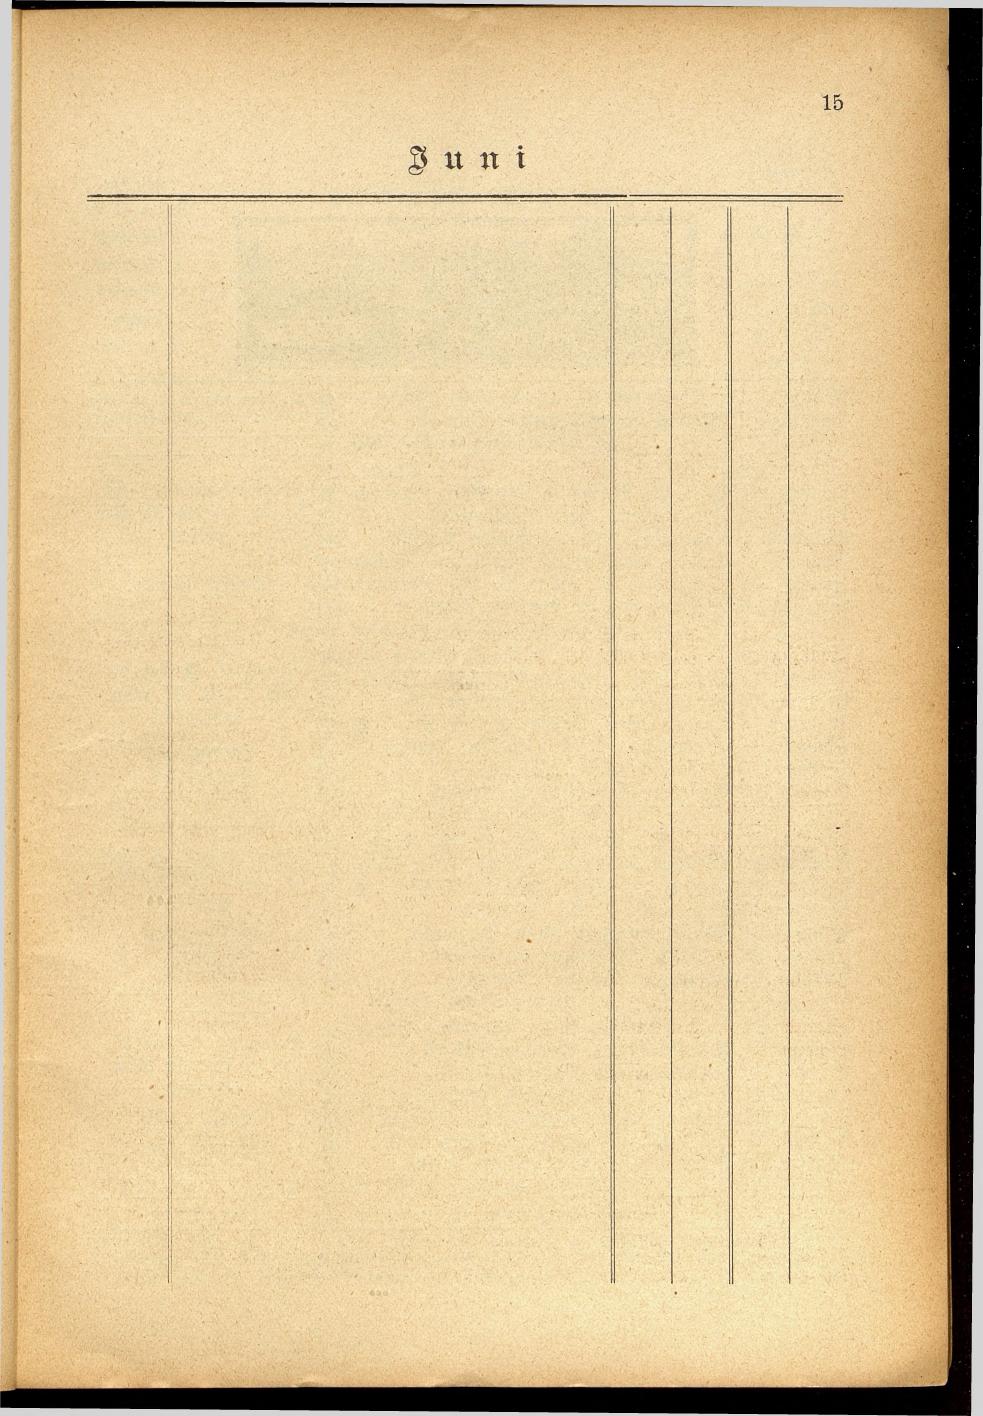 Illustrierter Braunauer-Kalender für das Jahr 1904 - Seite 19